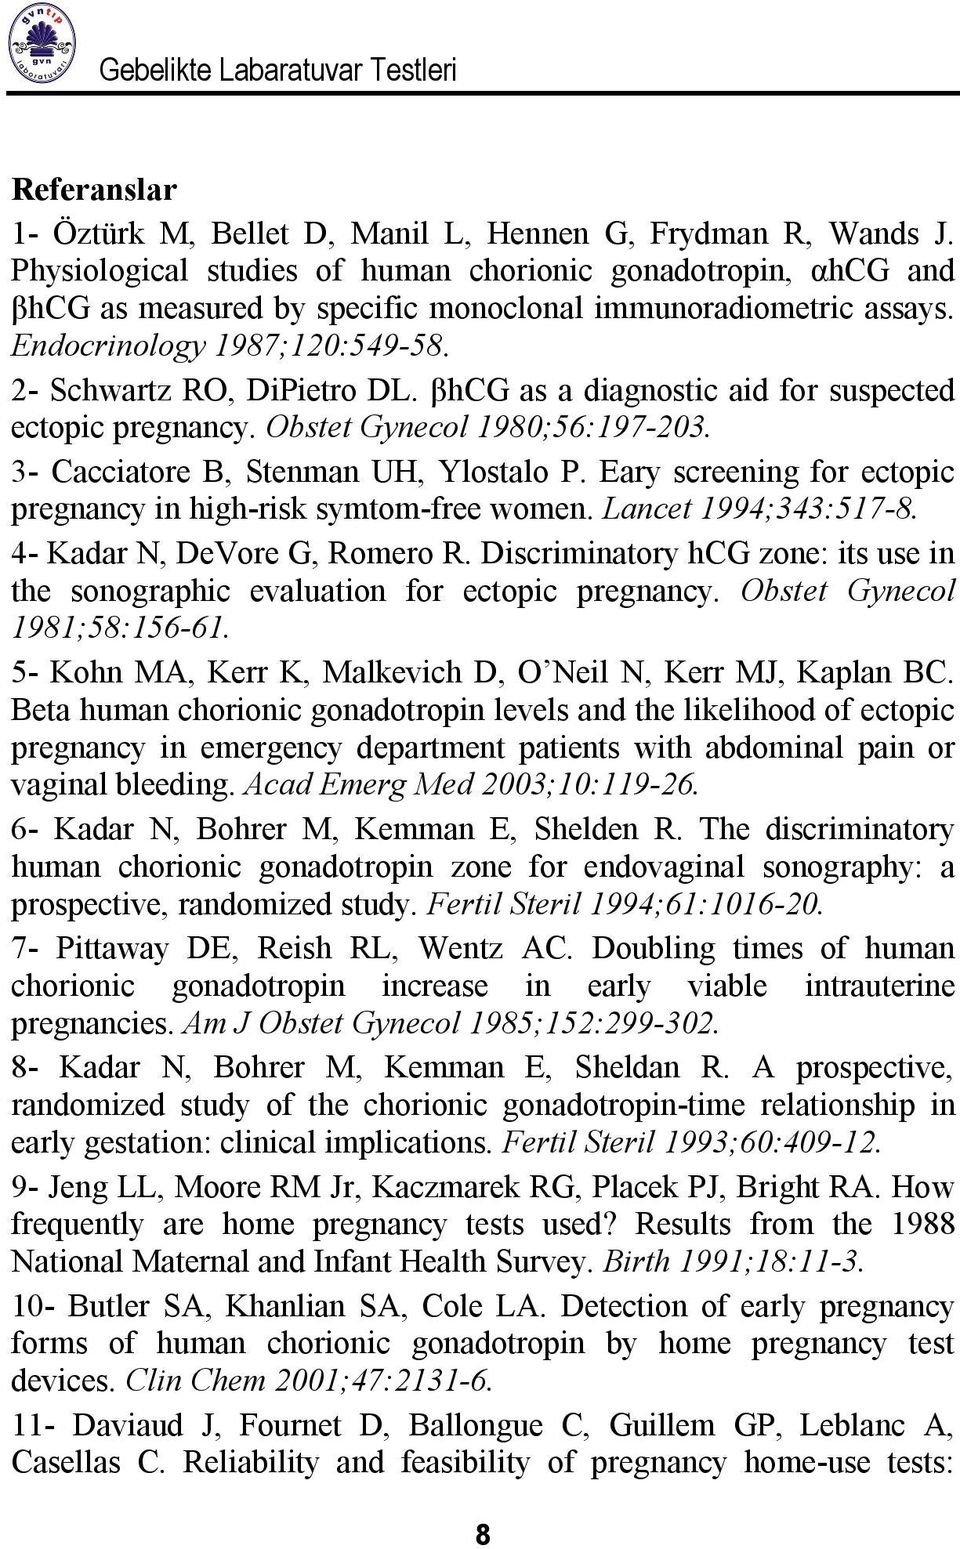 βhcg as a diagnostic aid for suspected ectopic pregnancy. Obstet Gynecol 1980;56:197-203. 3- Cacciatore B, Stenman UH, Ylostalo P. Eary screening for ectopic pregnancy in high-risk symtom-free women.